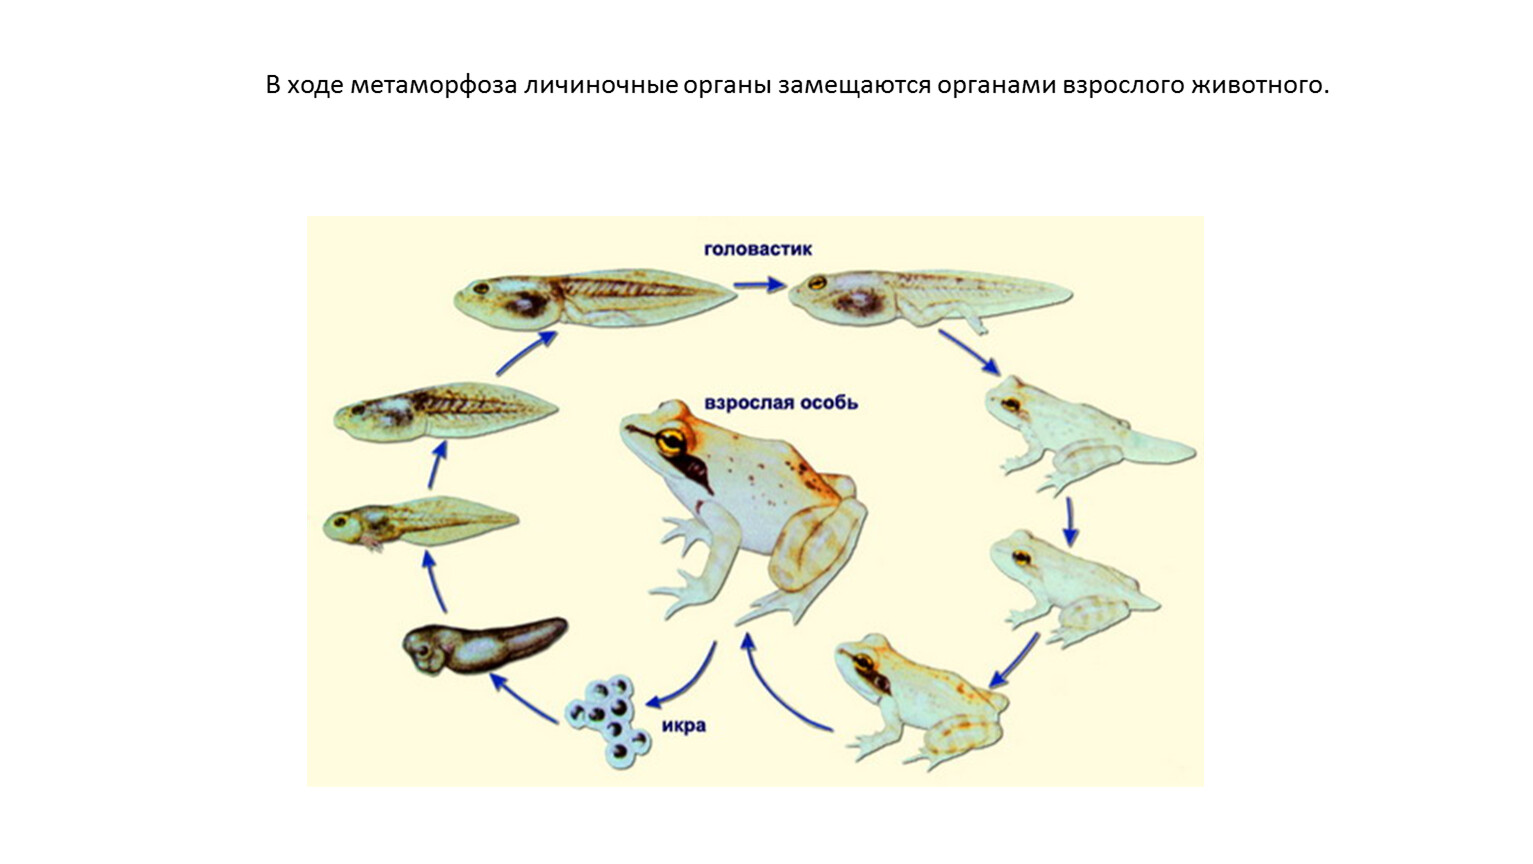 Изменение организма в течение жизни это. Биологическое значение Метаморфоза. Личиночное развитие земноводных разных отрядов. Развитие пингвина с метаморфозом. Качественное изменение организмов в течение жизни это.